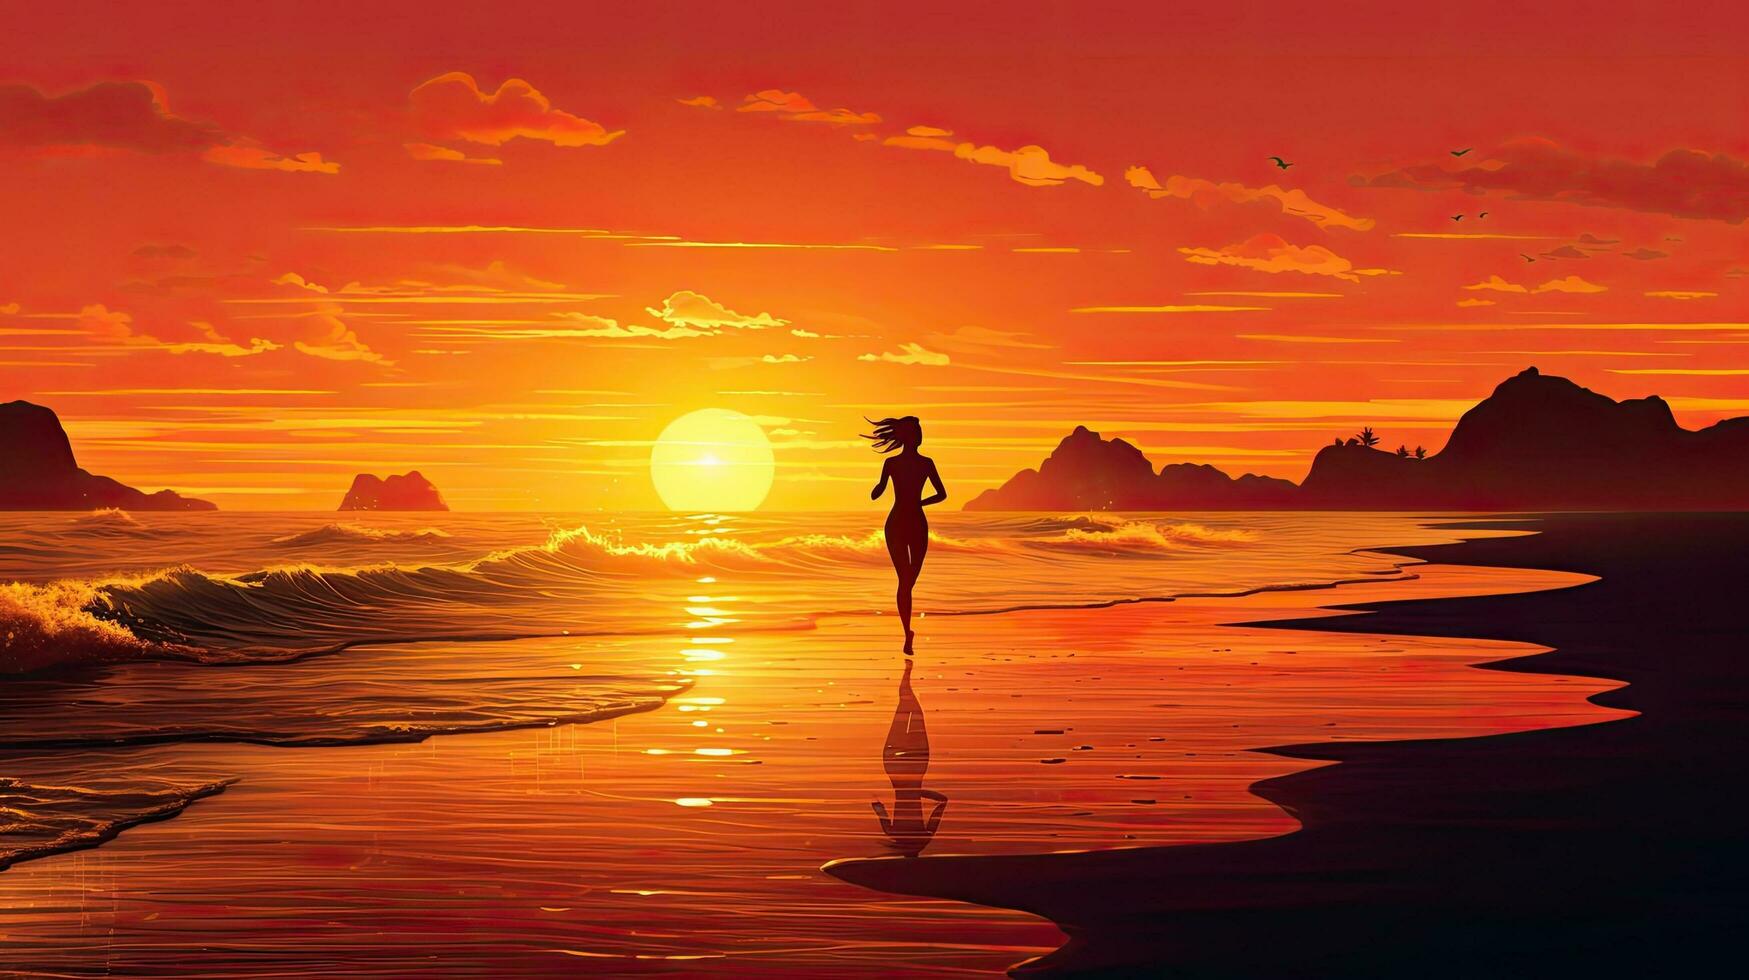  Sonne Strand Meer Hintergrundbild 1749x980. Laufen Auf Das Strand Beim Sonnenuntergang Durch Das Meer 27101748 Stock Photo Bei Vecteezy